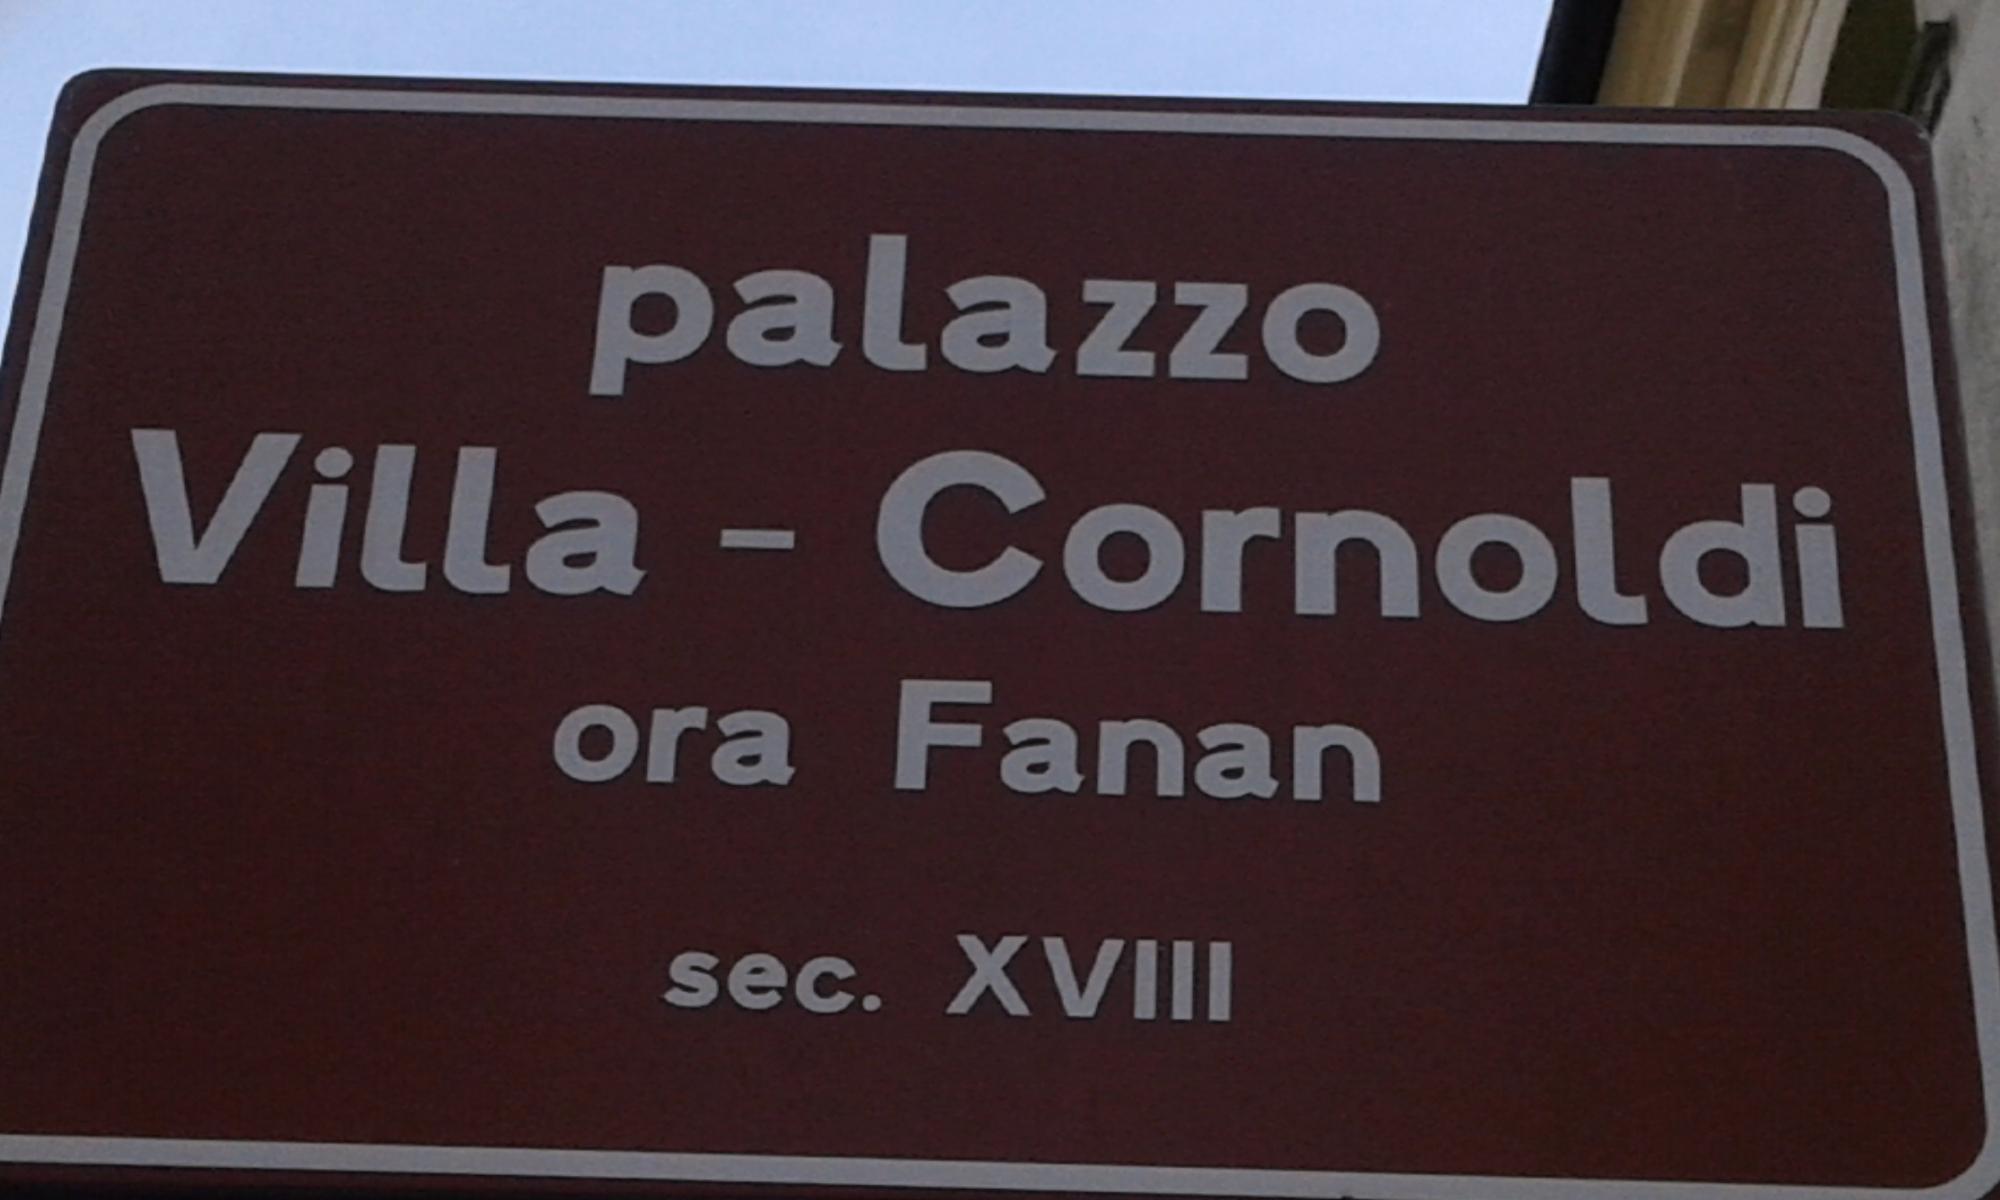 Palazzetto Dei Villa, Cornoldi - Ora Fanan - Villa Della Carboneria